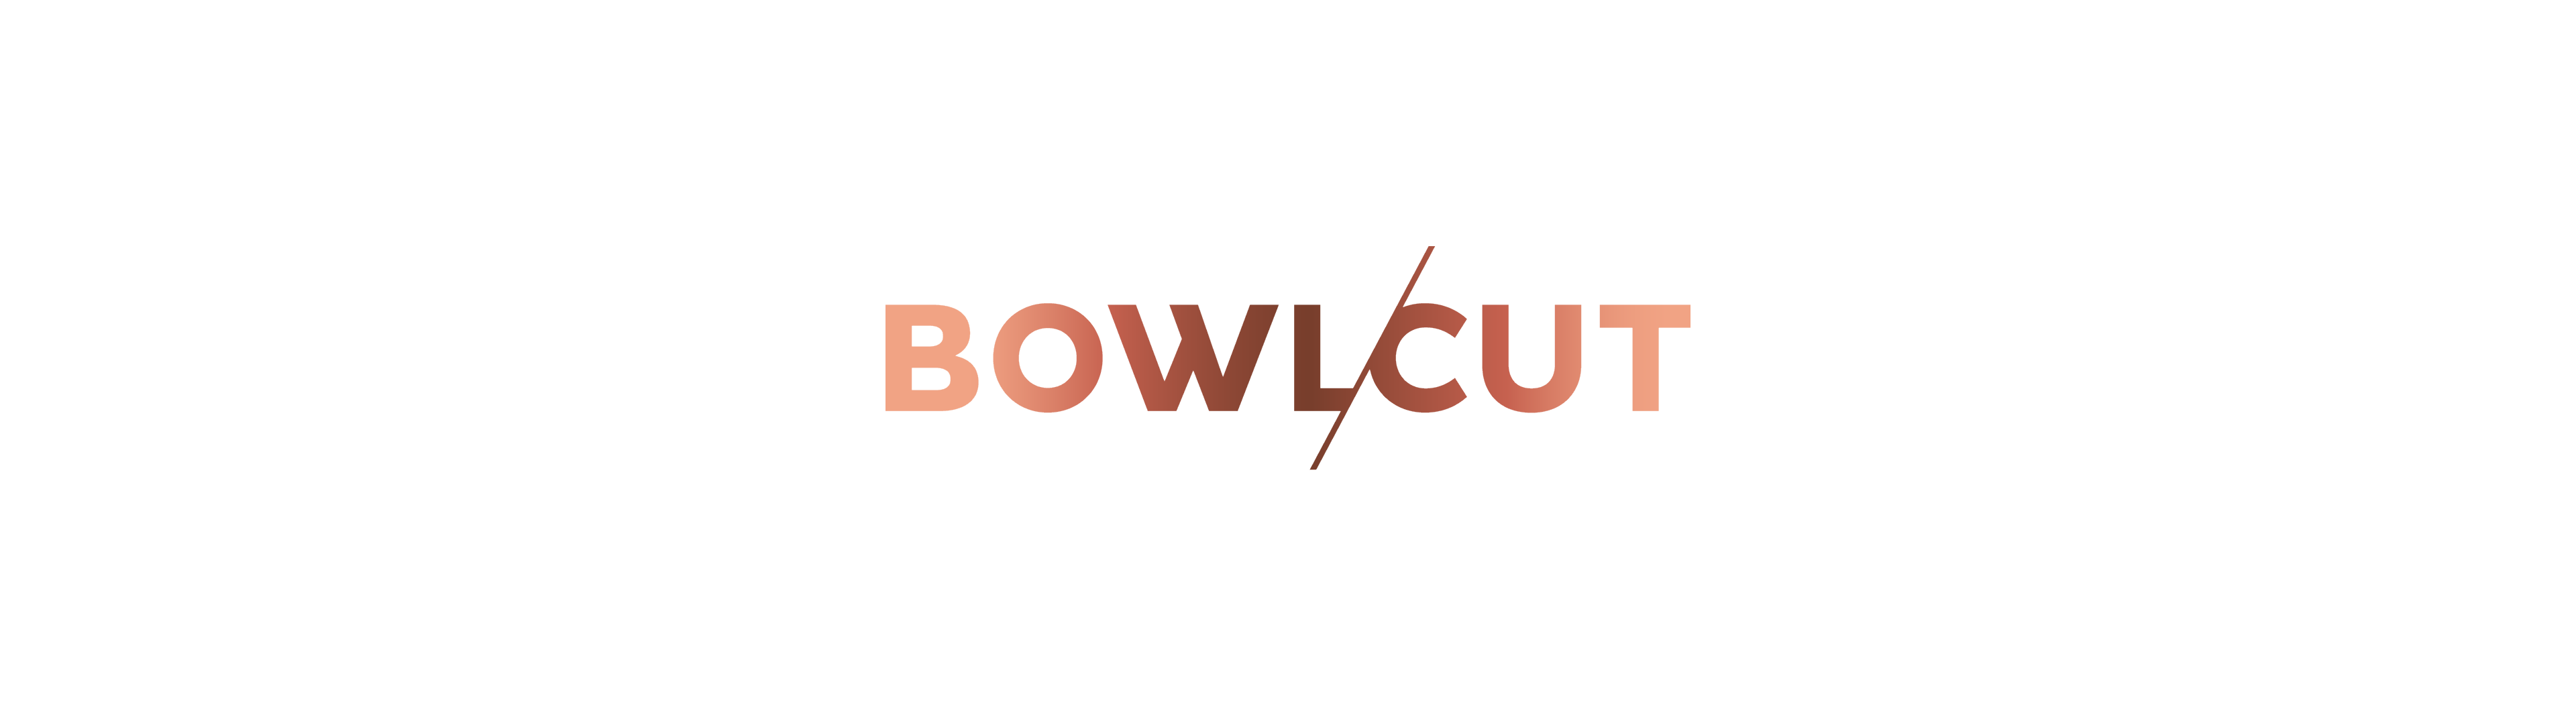 bowlcut